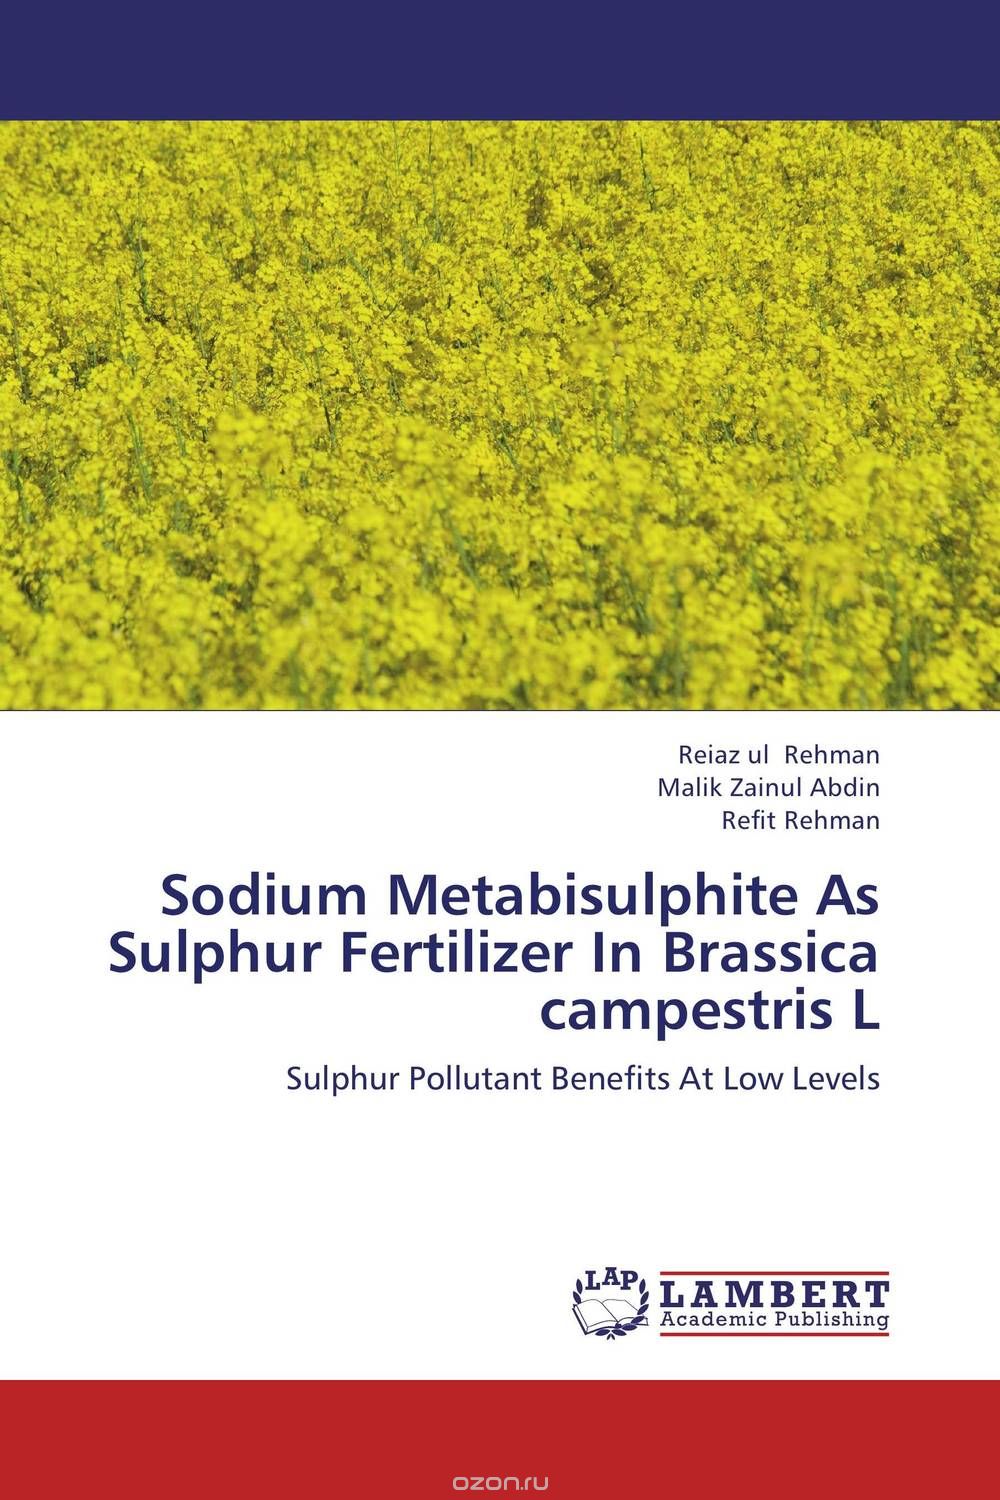 Sodium Metabisulphite As Sulphur Fertilizer In Brassica campestris L